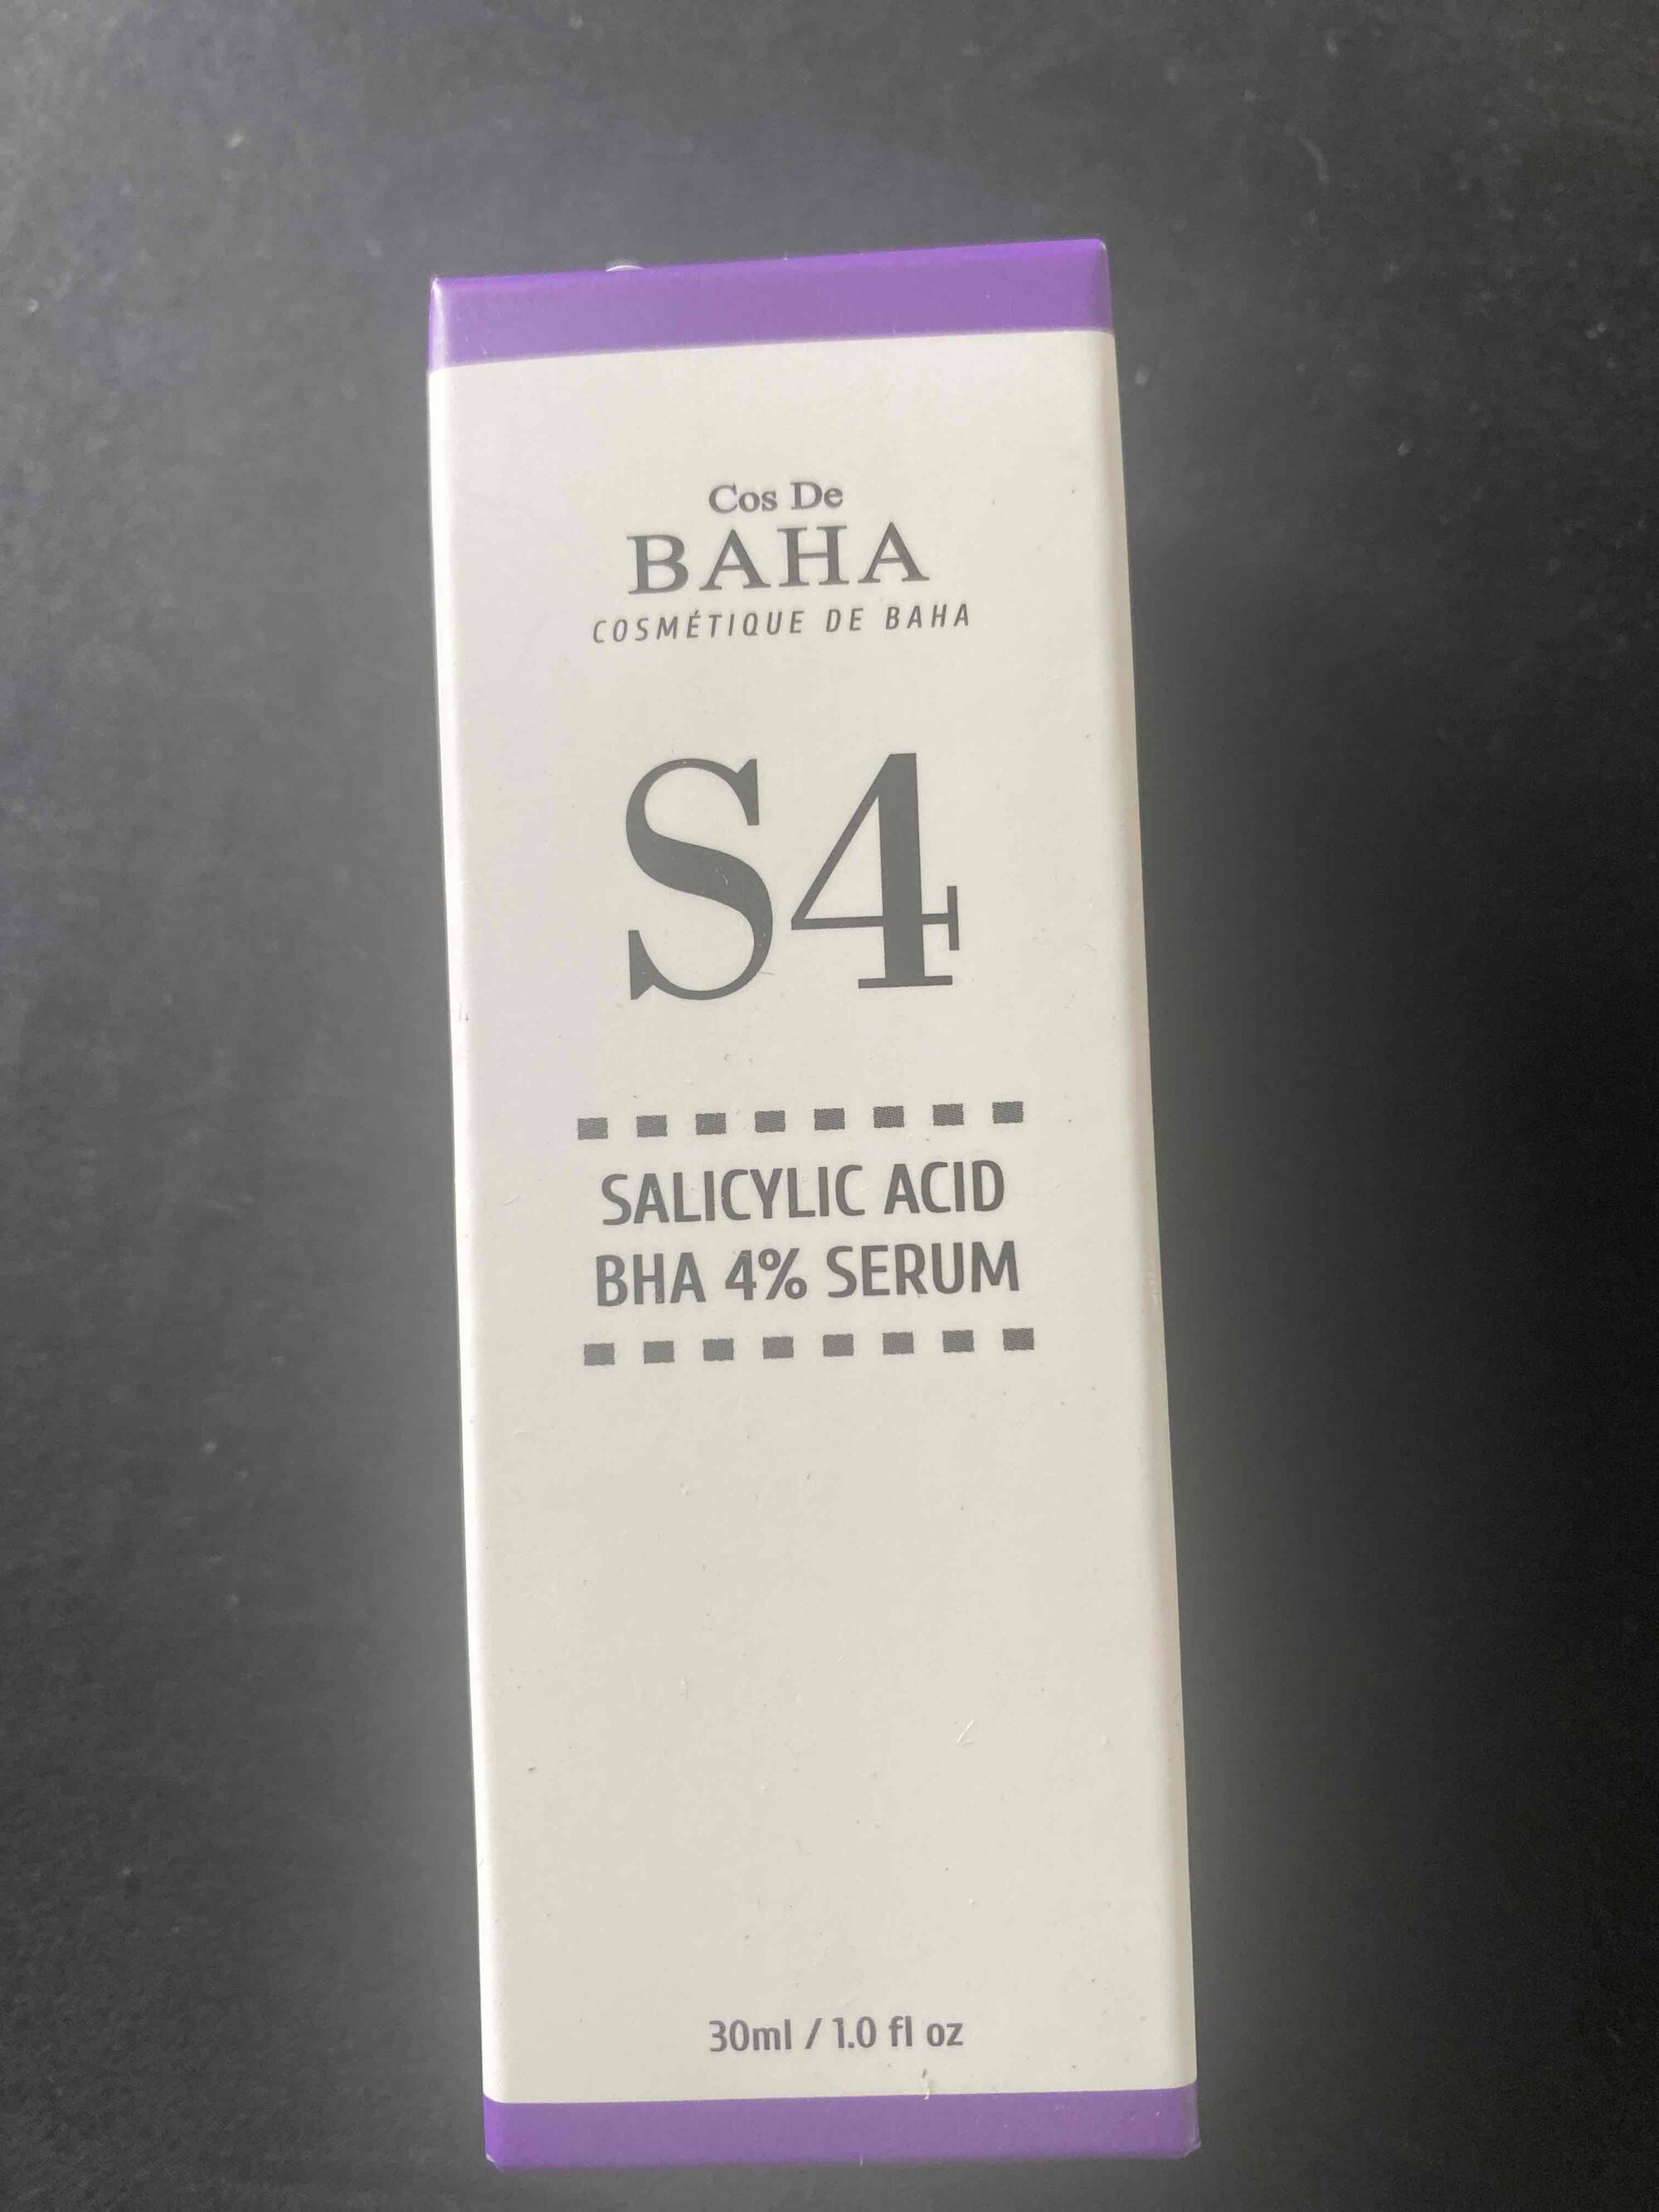 COS DE BAHA - Salicylic acid BHA 4% serum